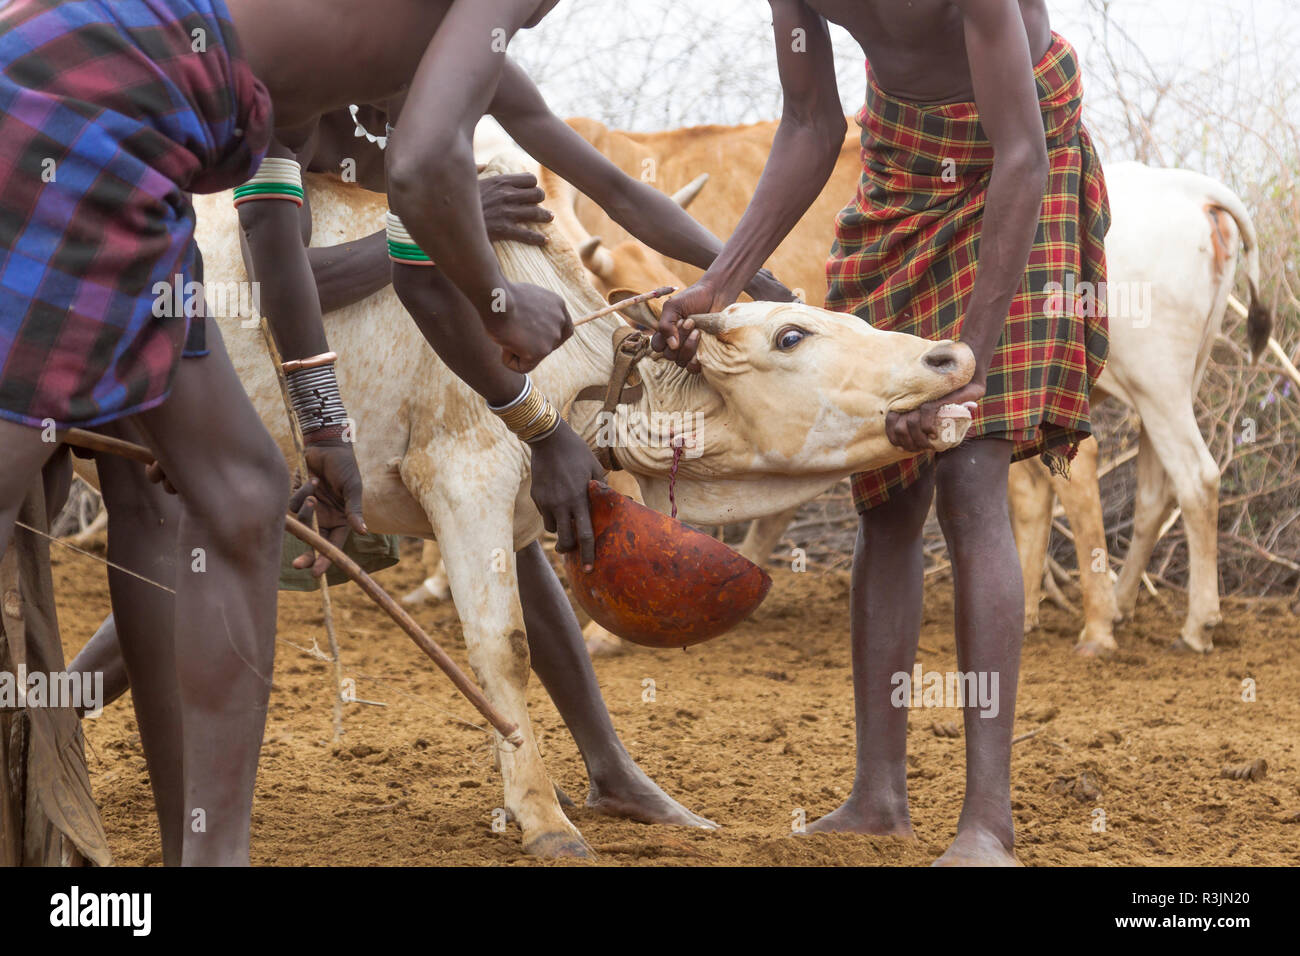 L'Afrique, l'Ethiopie, le sud de la vallée de l'Omo, Tribu Nyangatom. Les hommes occupent la Nyangatom steer tandis que le sang s'écoule dans une calebasse. Banque D'Images